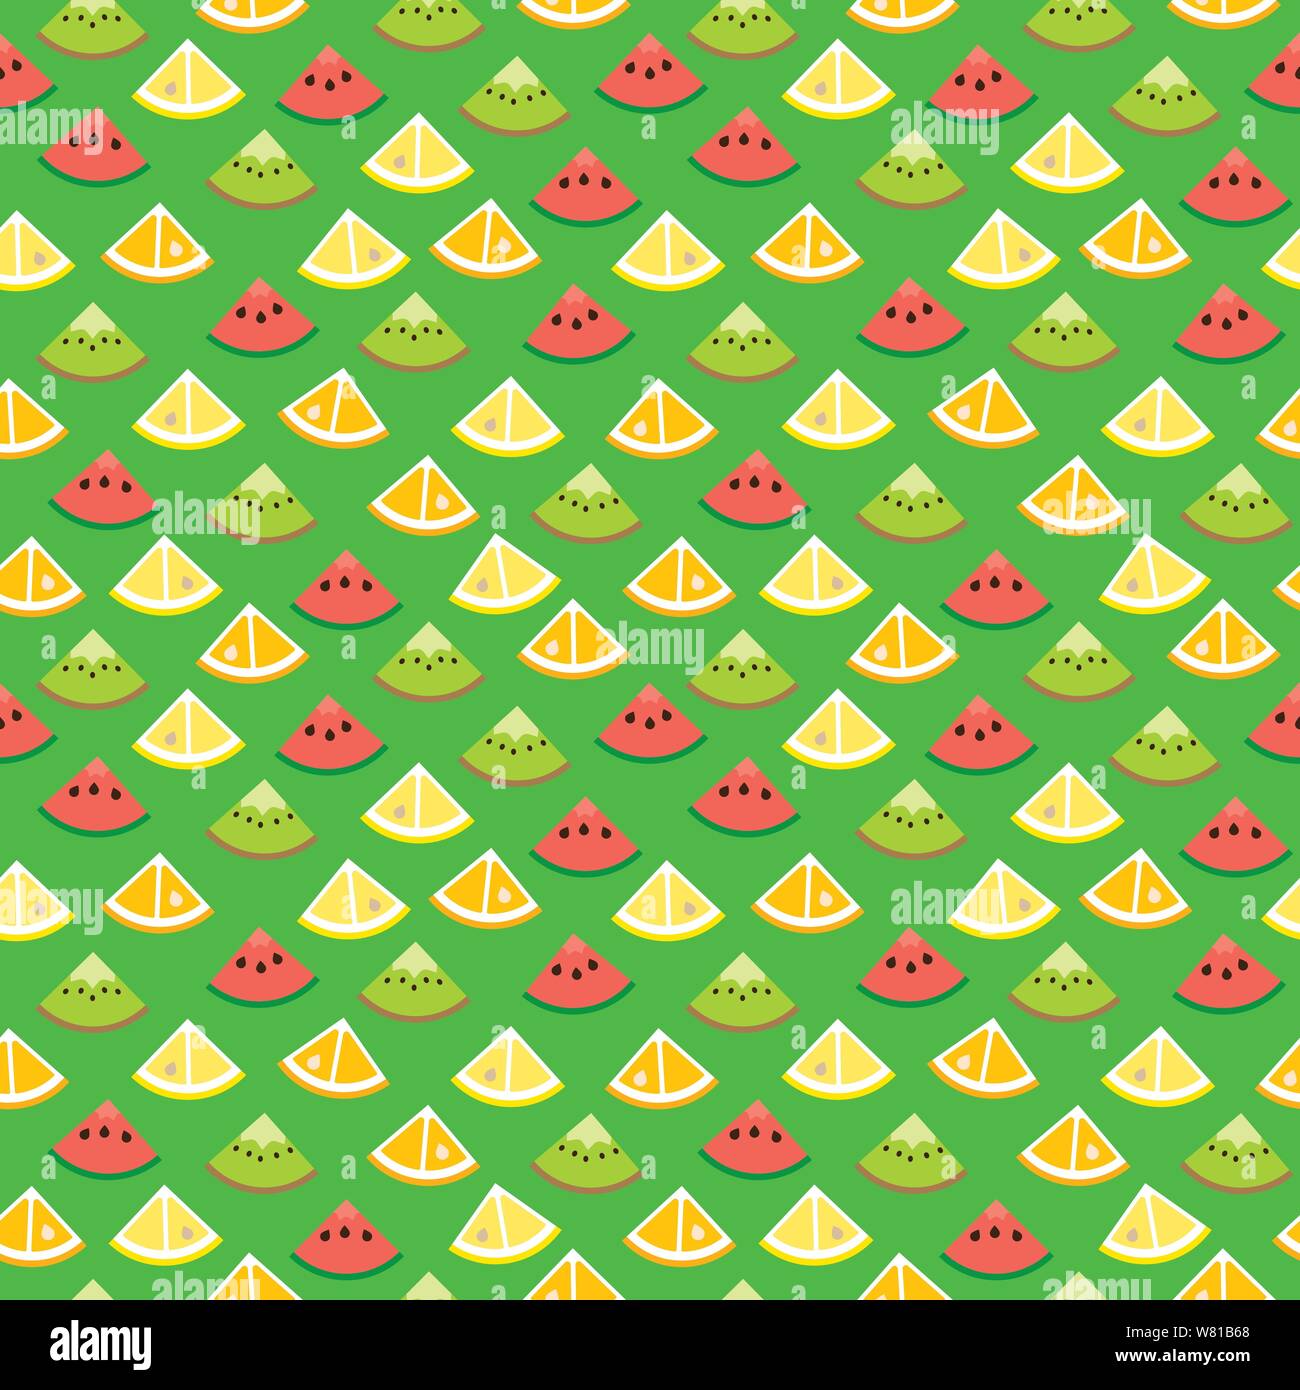 Nahtlose Hintergrundbilder Muster mit fruchtschnitten von Kiwi, Wassermelone, Orange und Zitrone auf grünem Hintergrund. Gesundes Essen Vector Illustration. Stock Vektor